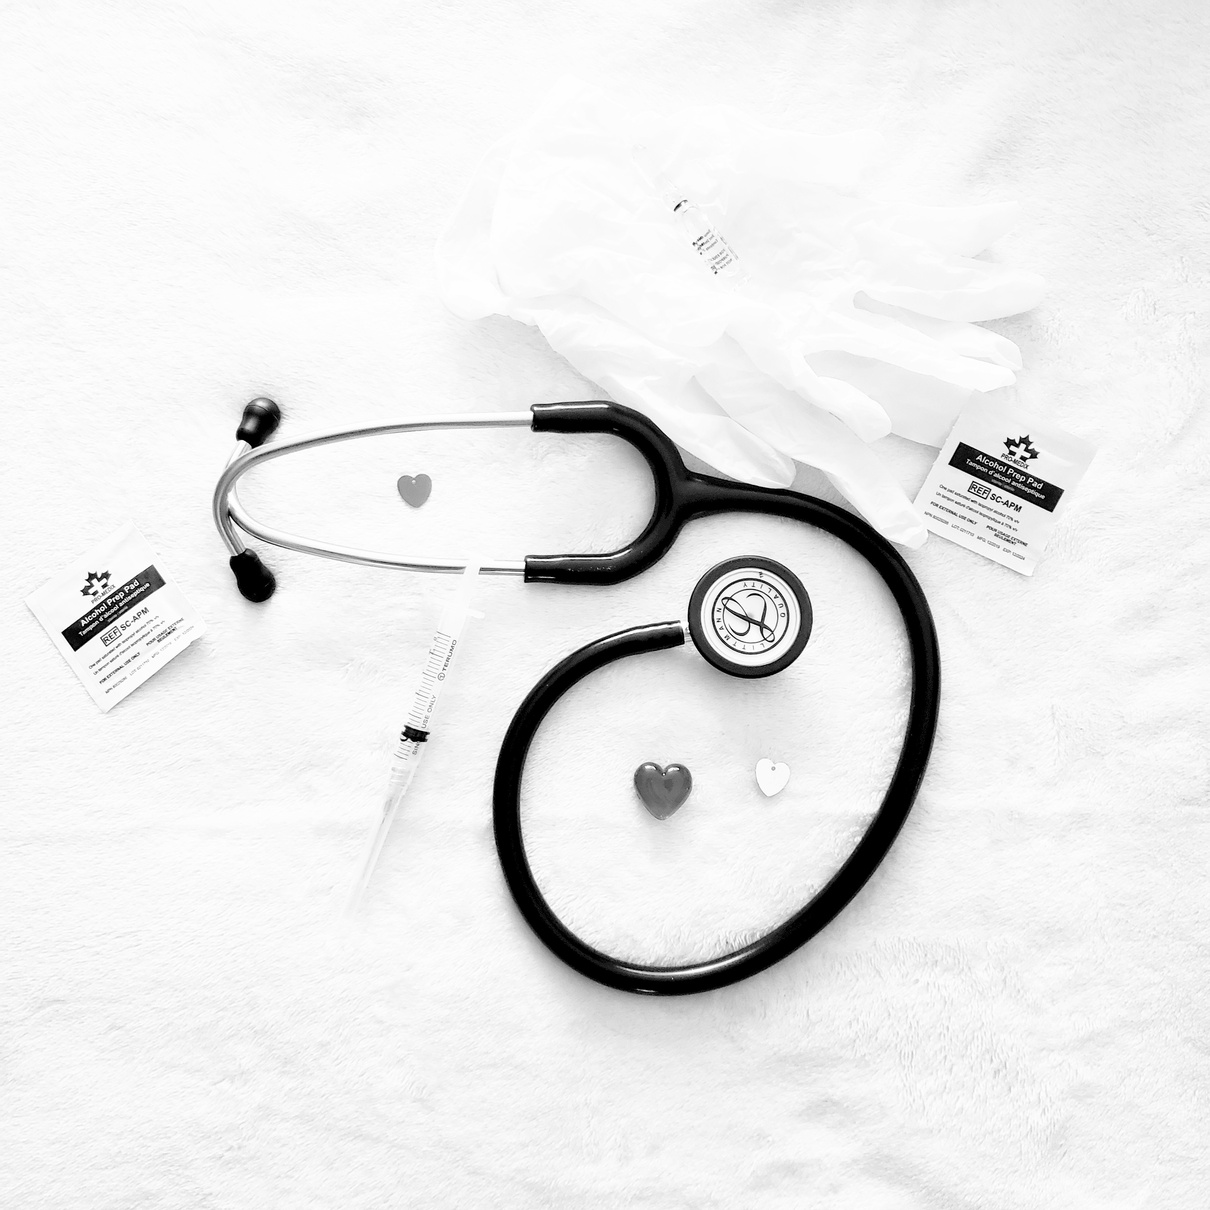 Medical Stethoscope on White Background